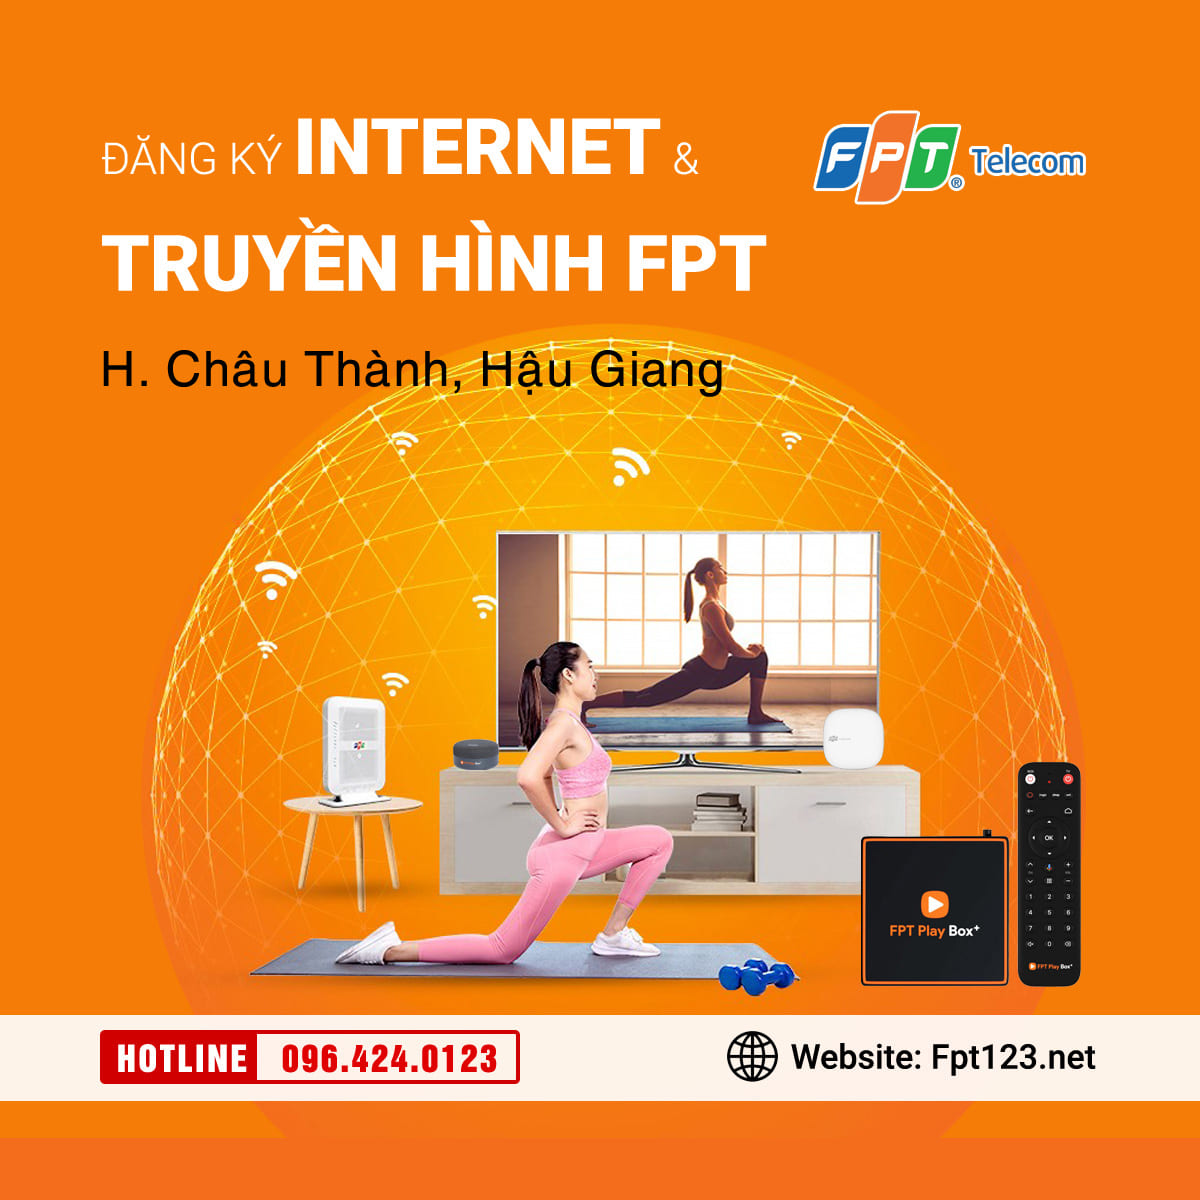 Đăng ký internet và truyền hình FPT Châu Thành, Hậu Giang